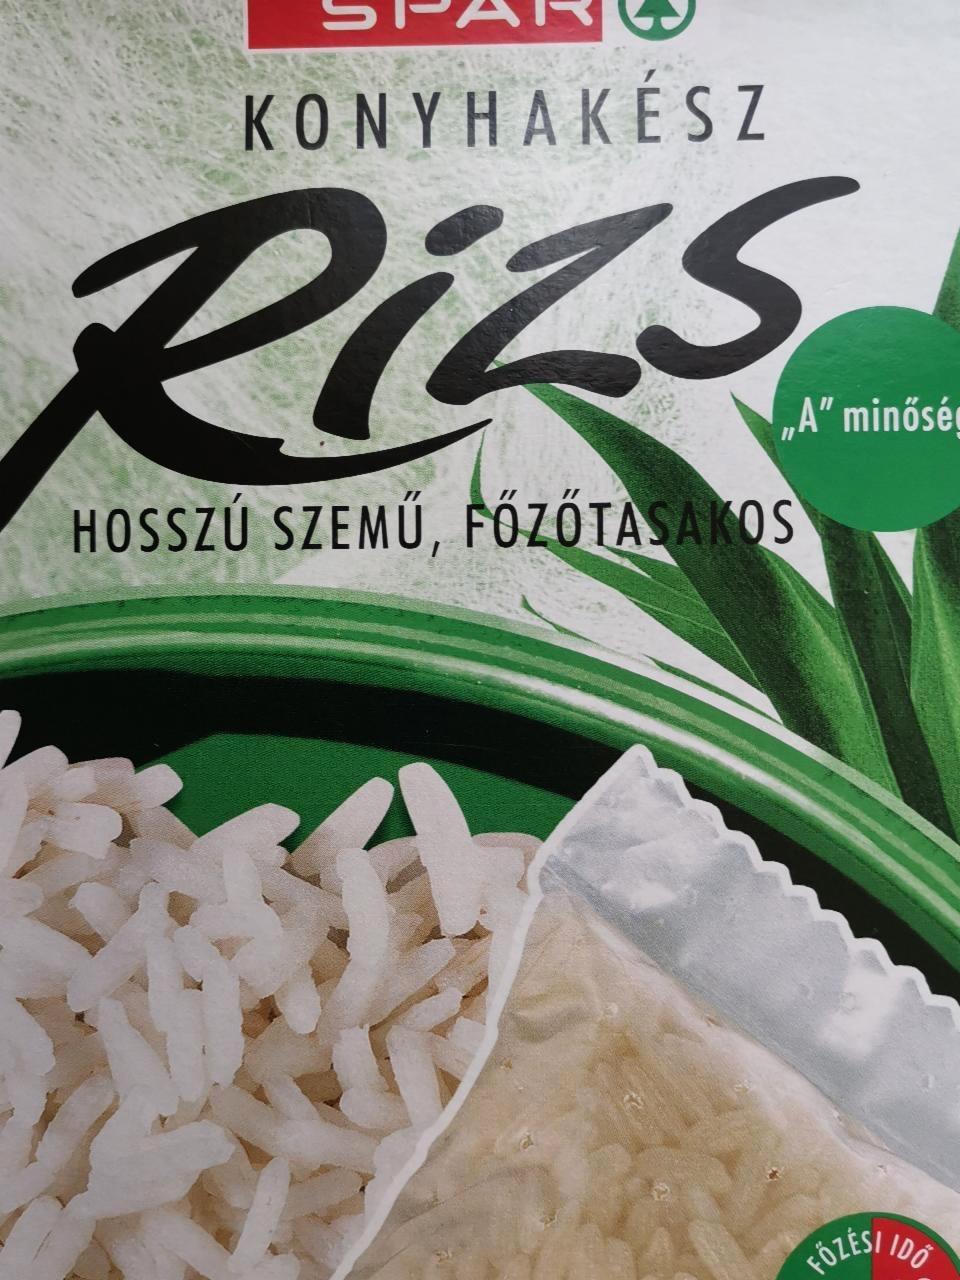 Képek - Konyhakész rizs hosszú szemű főzőtasakos Spar